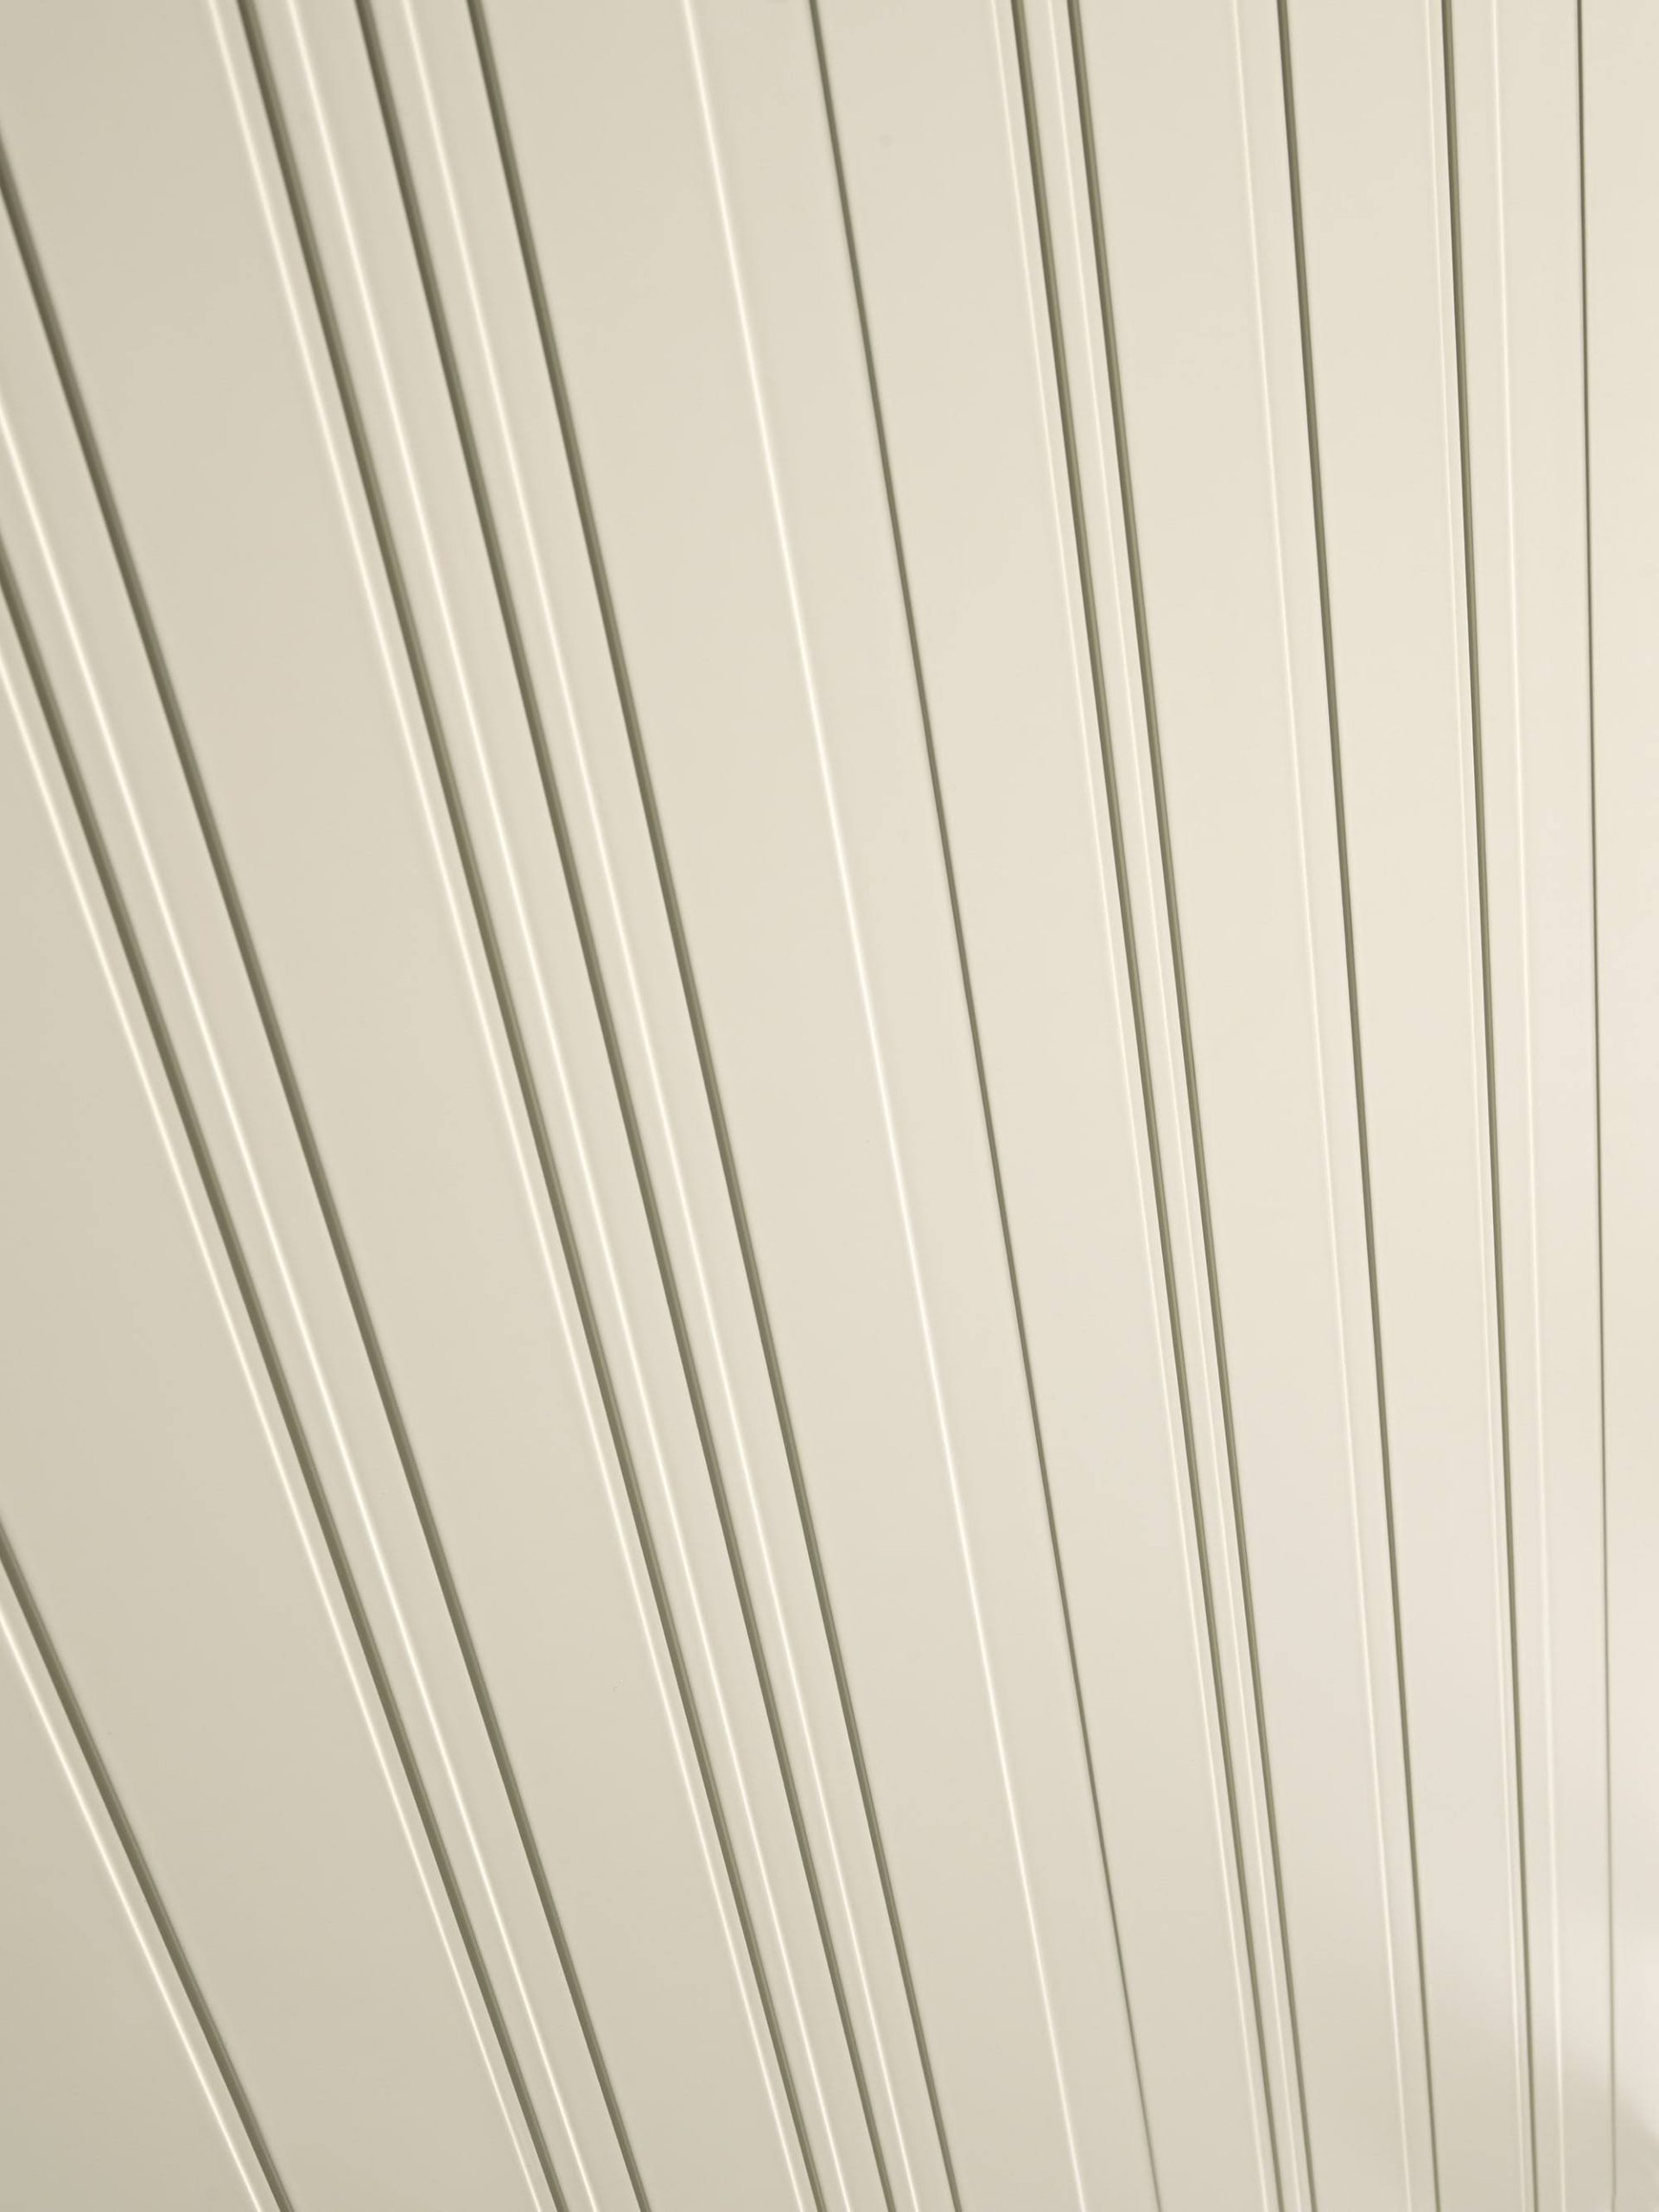 detalii frezari - pantografare sau basorelief dispuse vertical pe foaia de usa